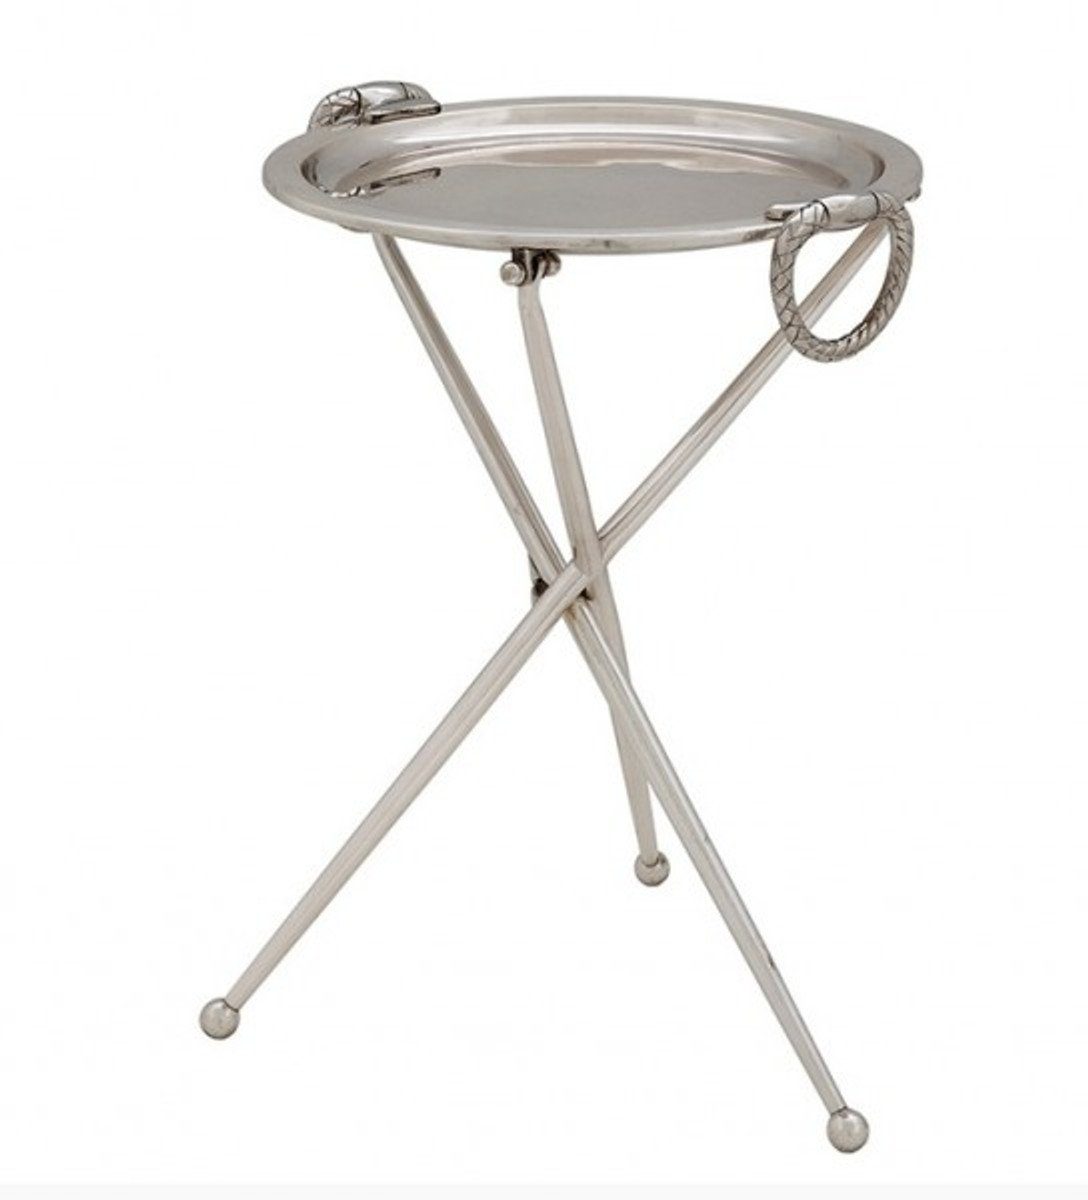 Casa Padrino Beistelltisch Designer Luxus Beistelltisch Silber Vintage Design Höhe: 43 cm, Durchmesser 33 cm - Edelstahl Tisch - Nickel Finish - Luxus Qualität